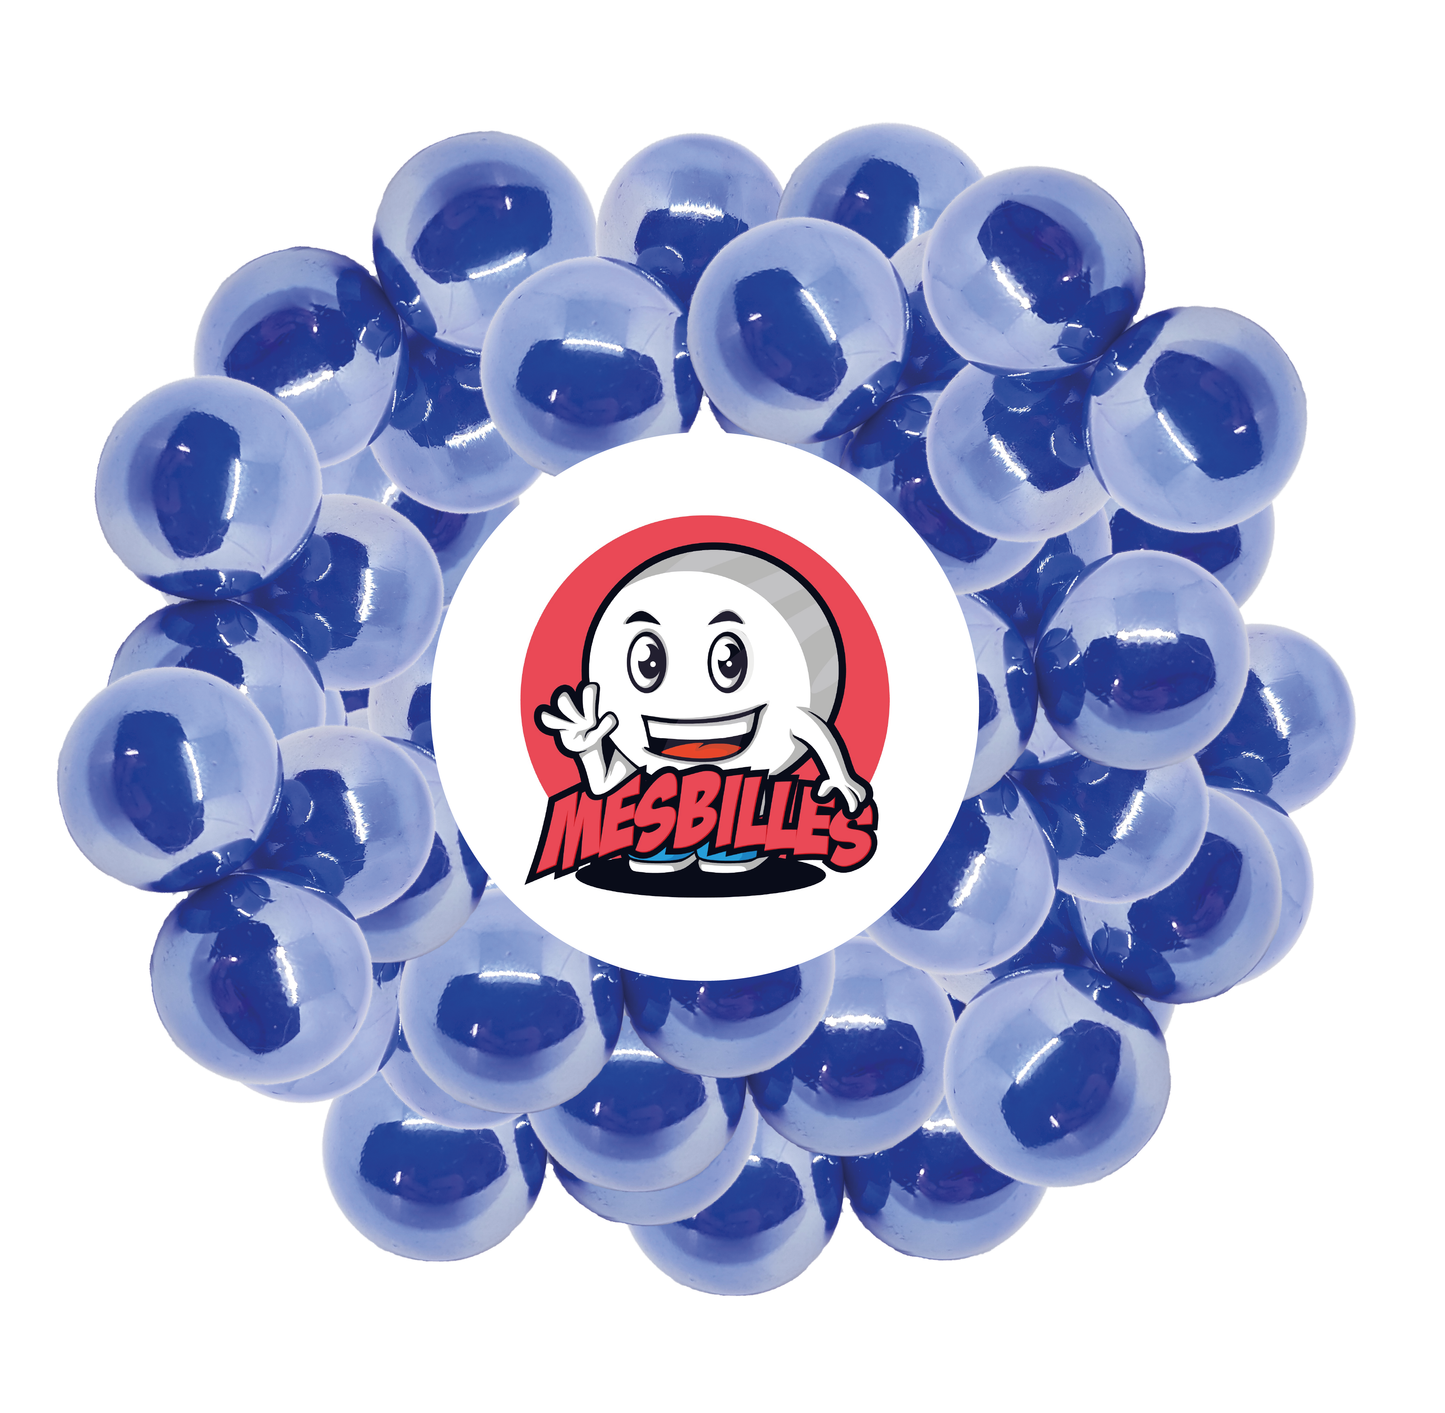 Image de la Mascotte MesBilles entourée de Billes Glossy 16 mm - Verre Opaque et Brillant Bleu Nacré - MesBilles